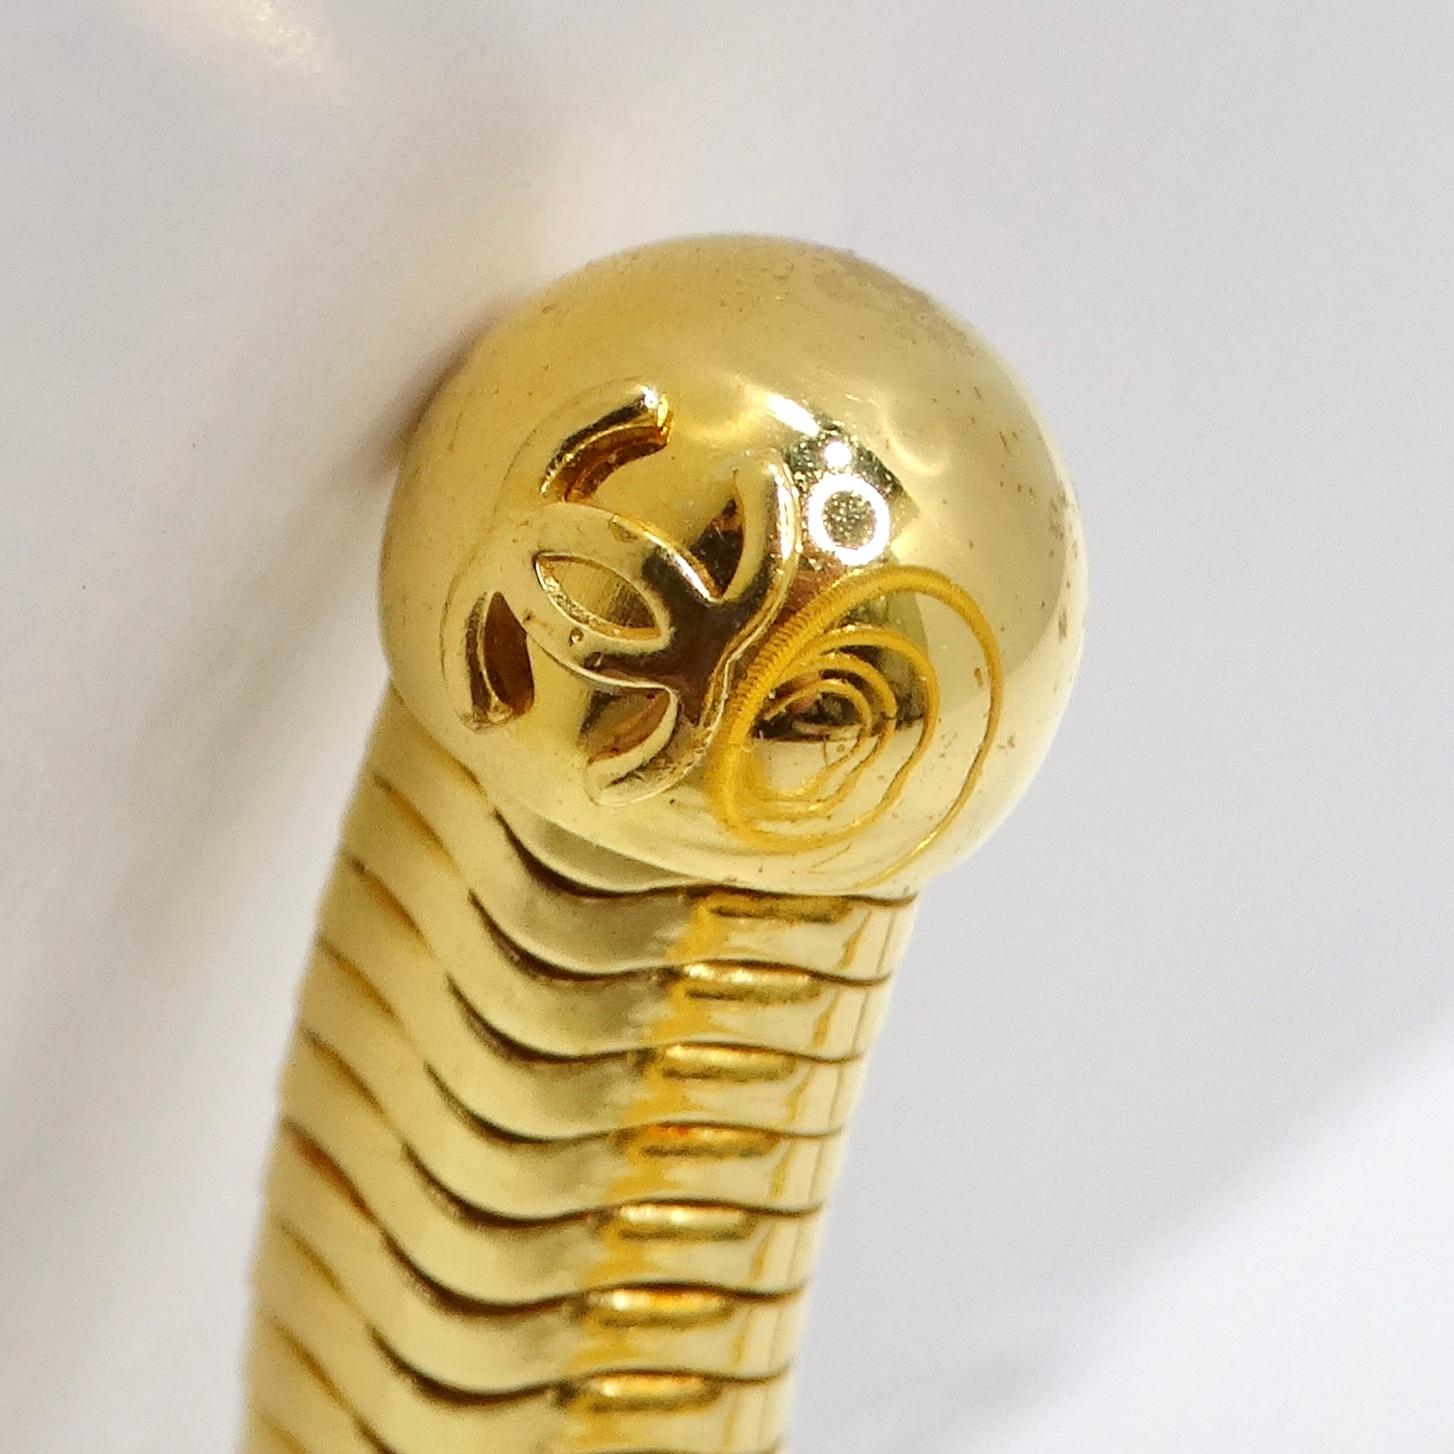 Wir präsentieren die außergewöhnliche Chanel 1997 Gold Tone Spiral Arm Cuff, ein seltenes Vintage-Stück, das zeitlose Eleganz und Raffinesse ausstrahlt. Dieses mit viel Liebe zum Detail gefertigte, vergoldete Spiralarmband/Armreif ist ein